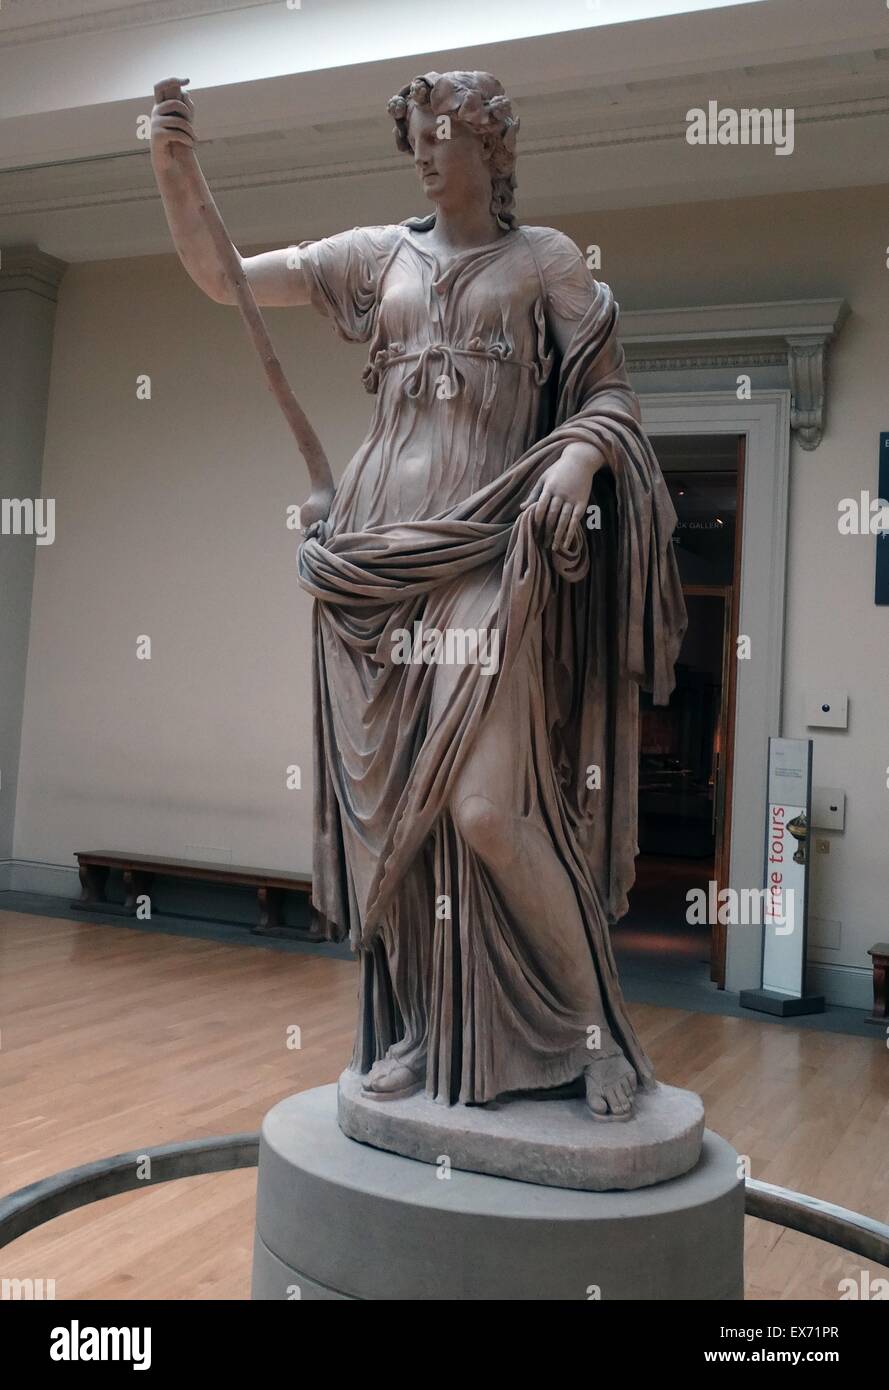 Thalia, muse de la Comédie romaine, 2ème ANNONCE de siècle statue. ln la mythologie antique, Thalia était l'une des neuf Muses. Les Muses étaient des compagnes du dieu Apollon et consacré aux arts et sciences. Banque D'Images